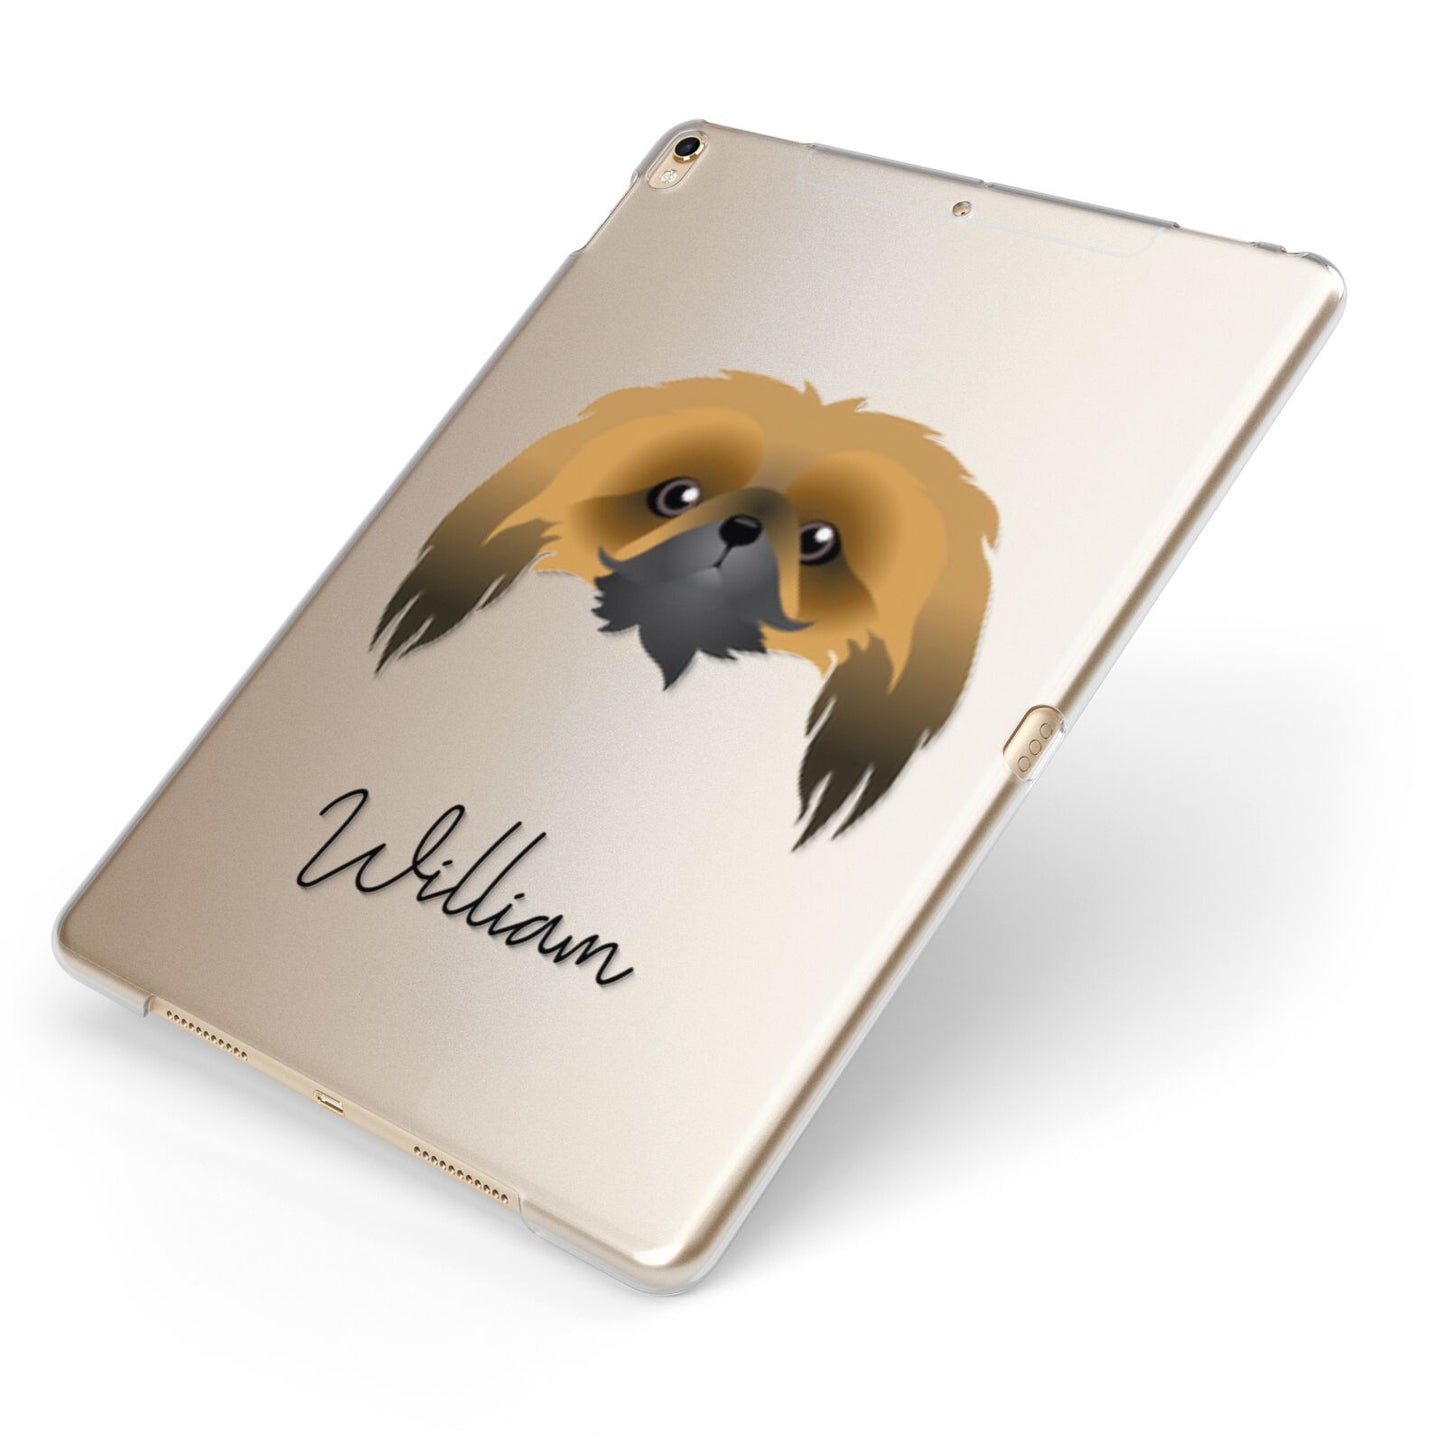 Pekingese Personalised Apple iPad Case on Gold iPad Side View